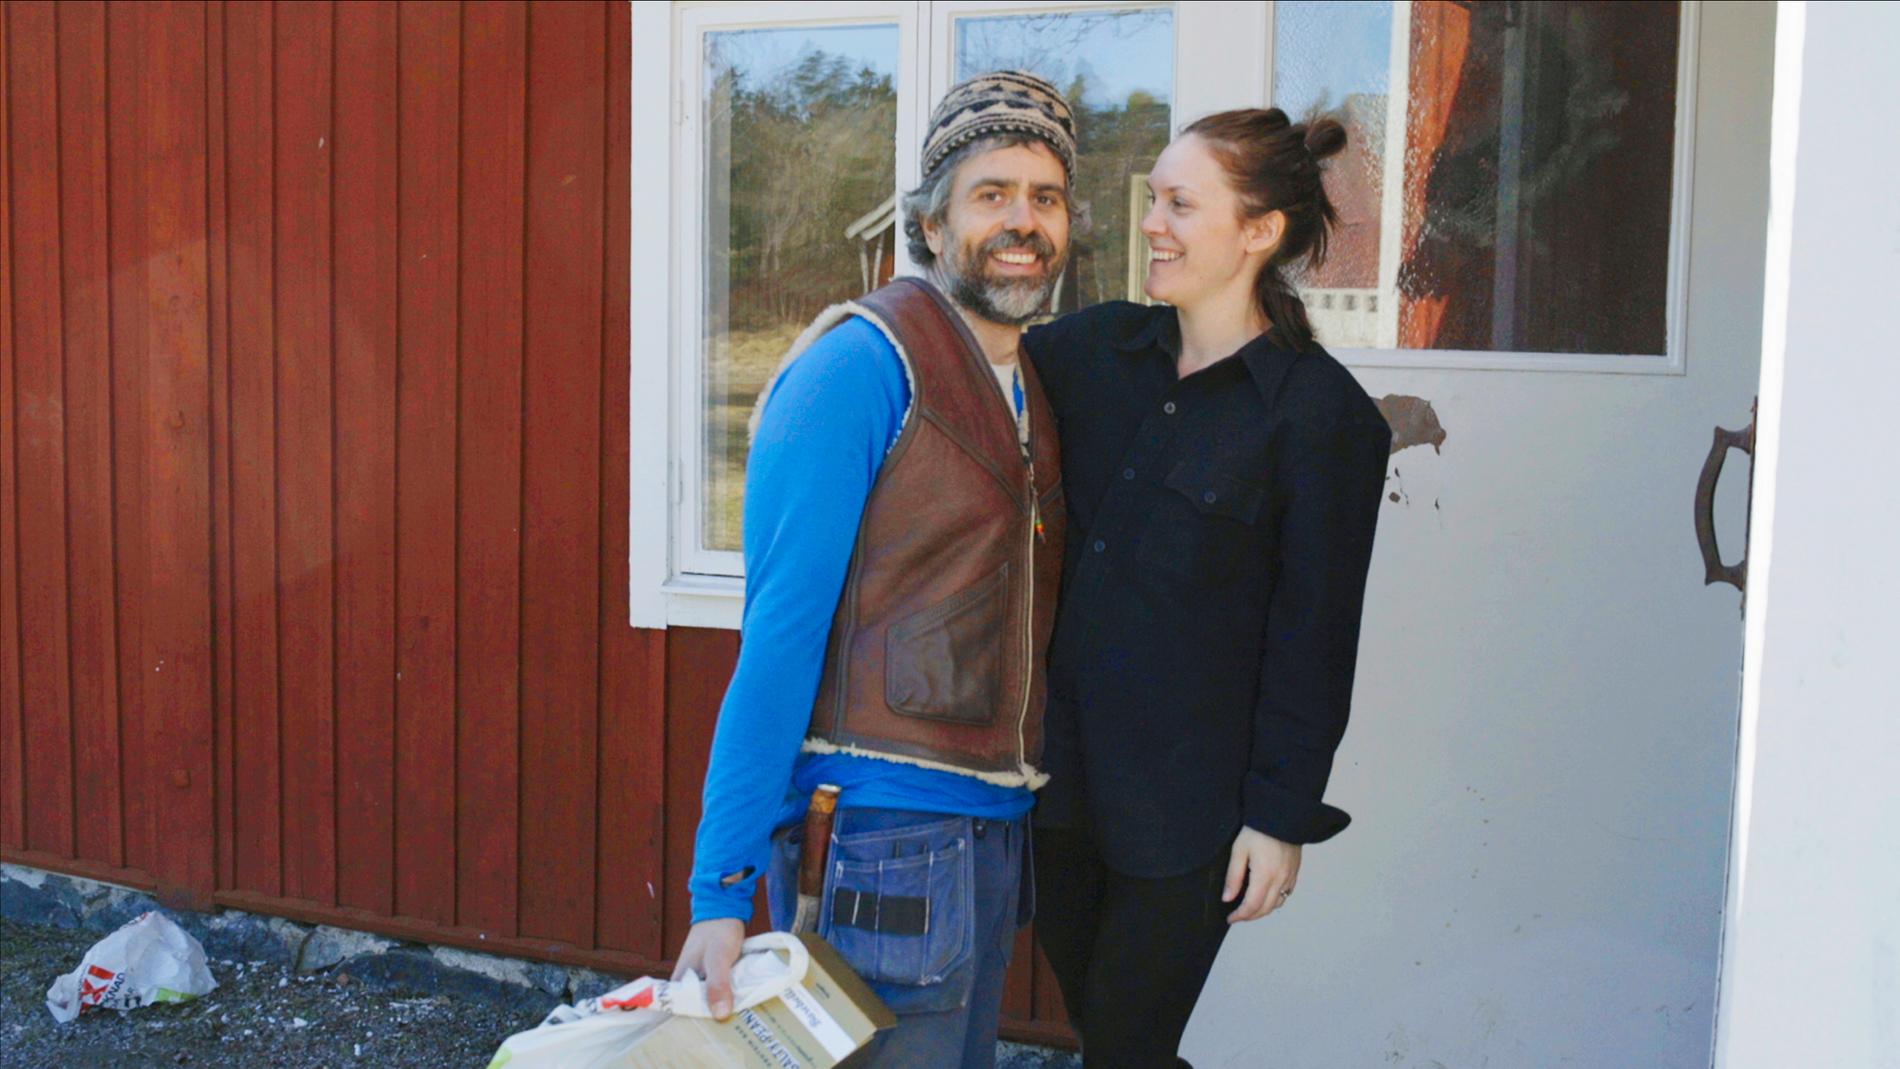 Kalle Zackari Wahlström och Britta Zackari i SVT:s serie ”Hjälp, vi har köpt en bondgård!” – men paret är fortfarande folkbokförda i sitt radhus